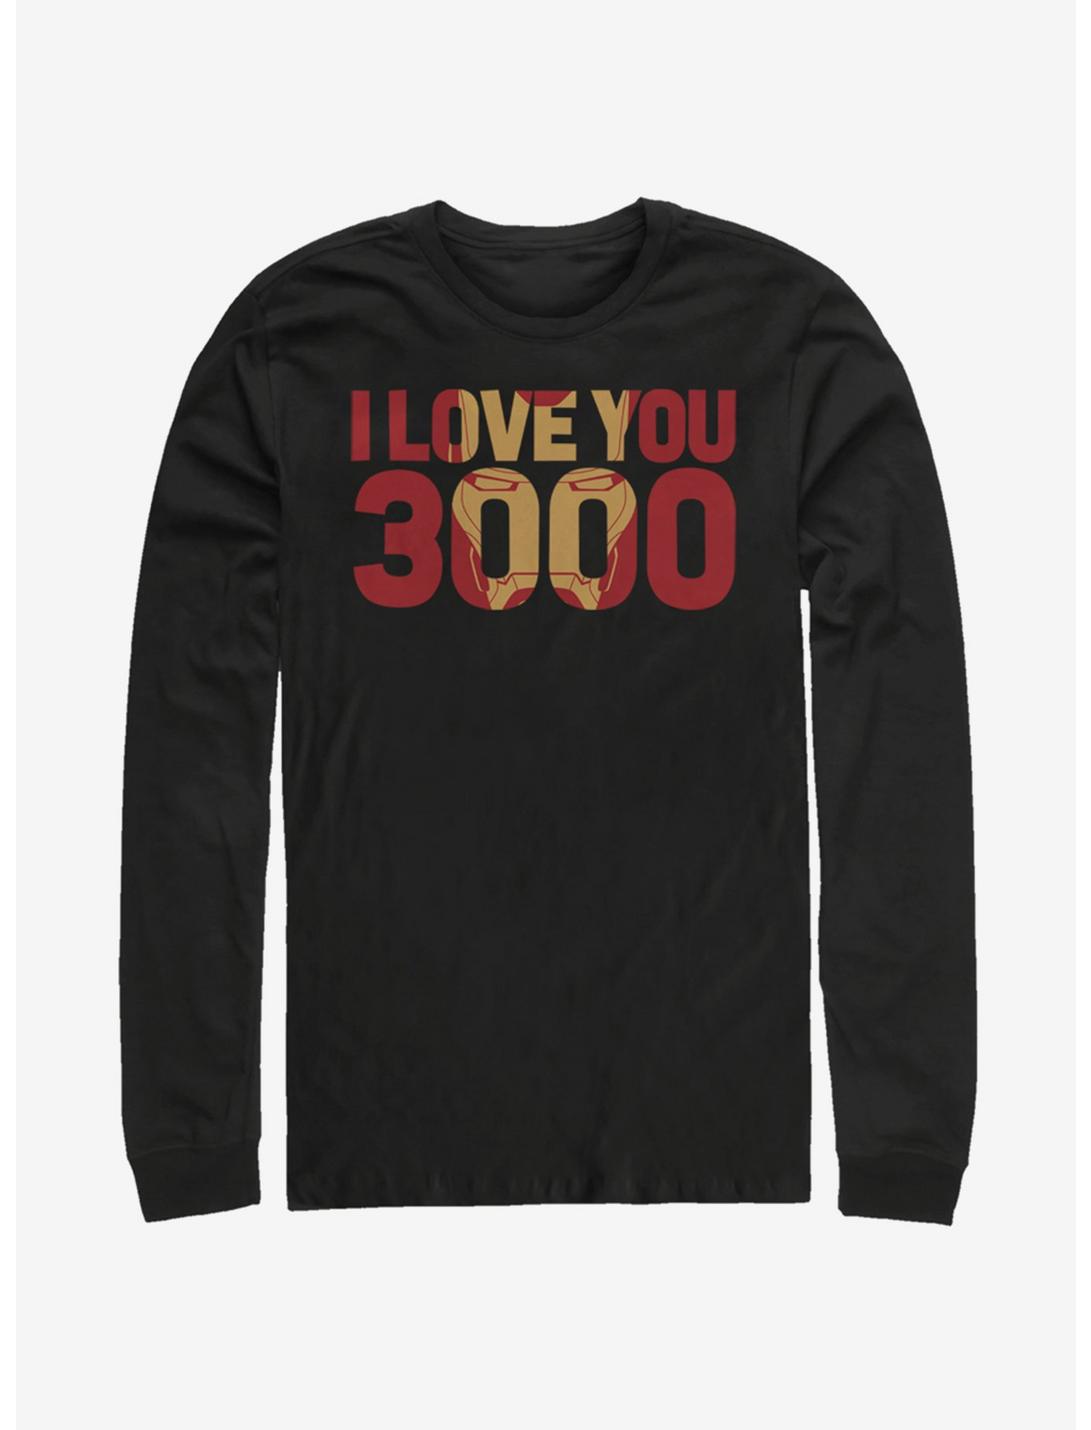 Marvel Avengers: Endgame Love You 3000 Long-Sleeve T-Shirt, BLACK, hi-res